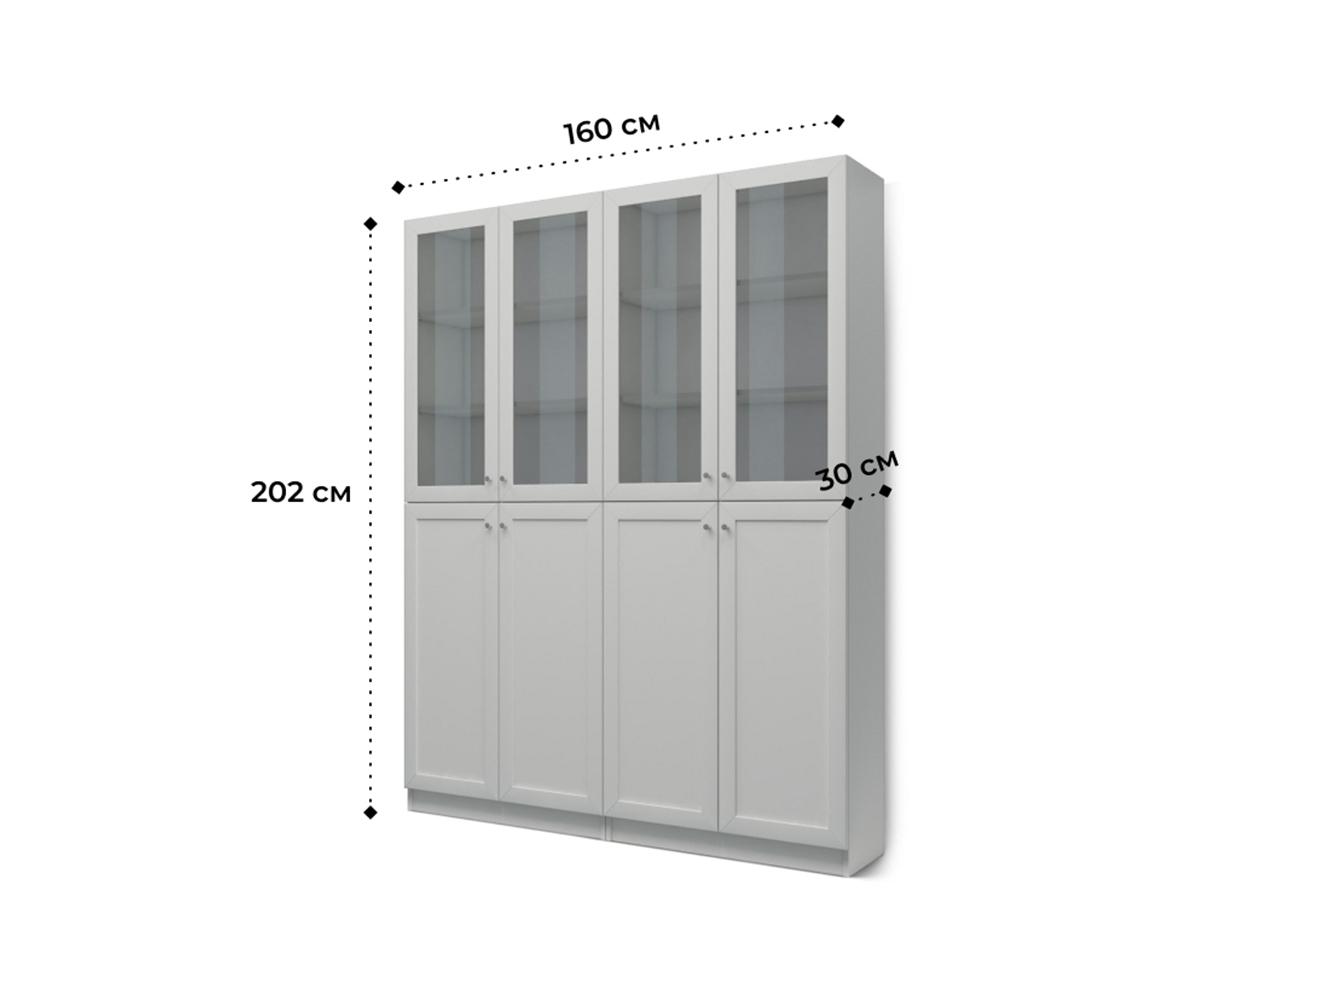  Книжный шкаф Билли 342 grey ИКЕА (IKEA) изображение товара